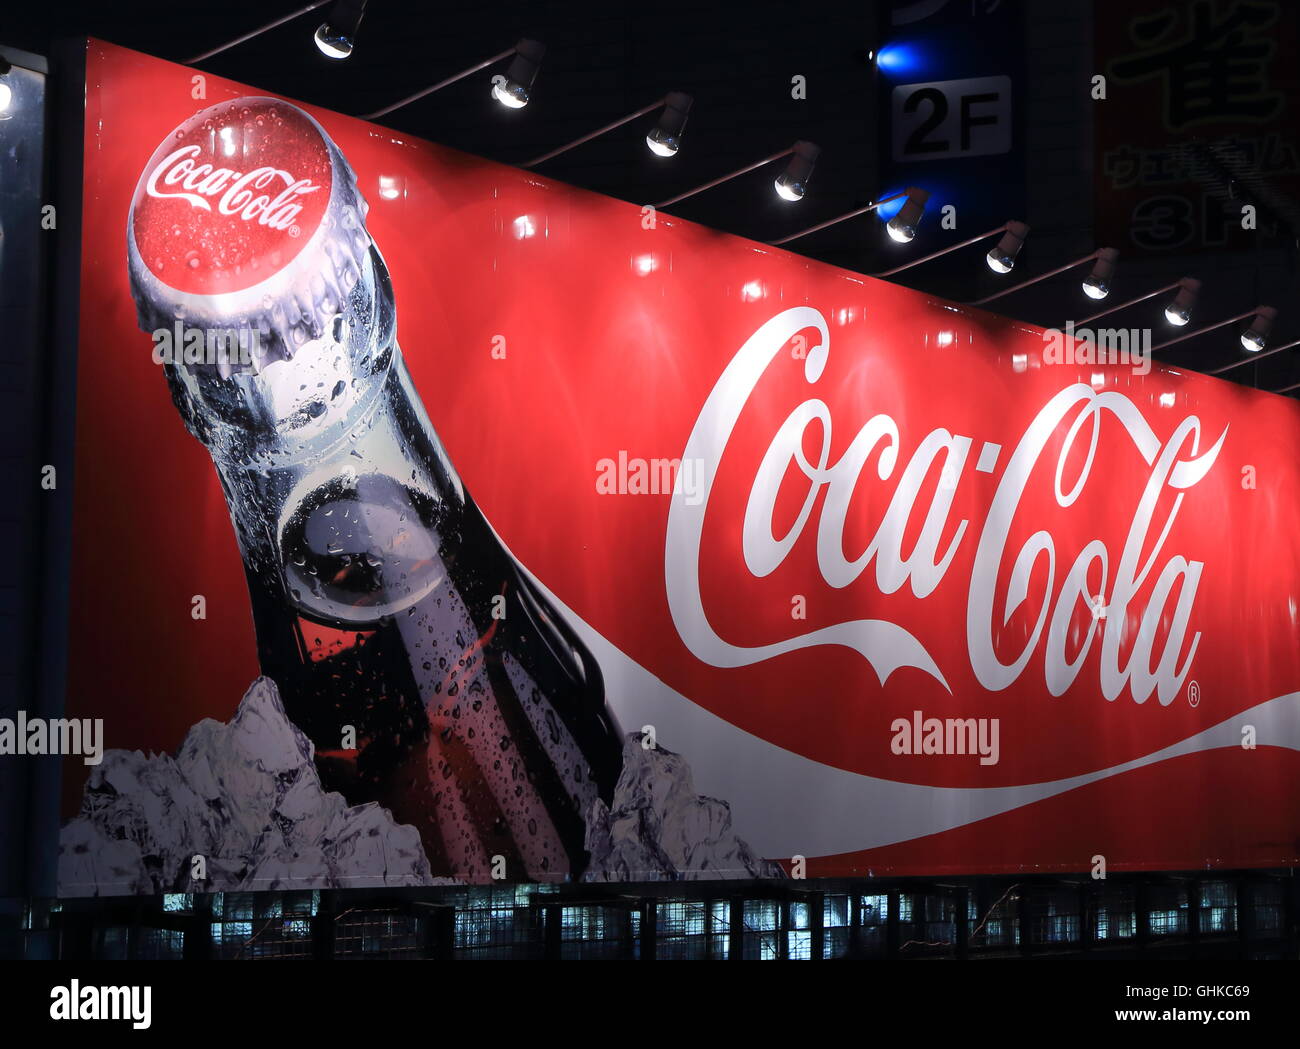 Coca Cola Plakat Werbung amerikanischen multinationalen Beverage Corporation und Hersteller. Stockfoto